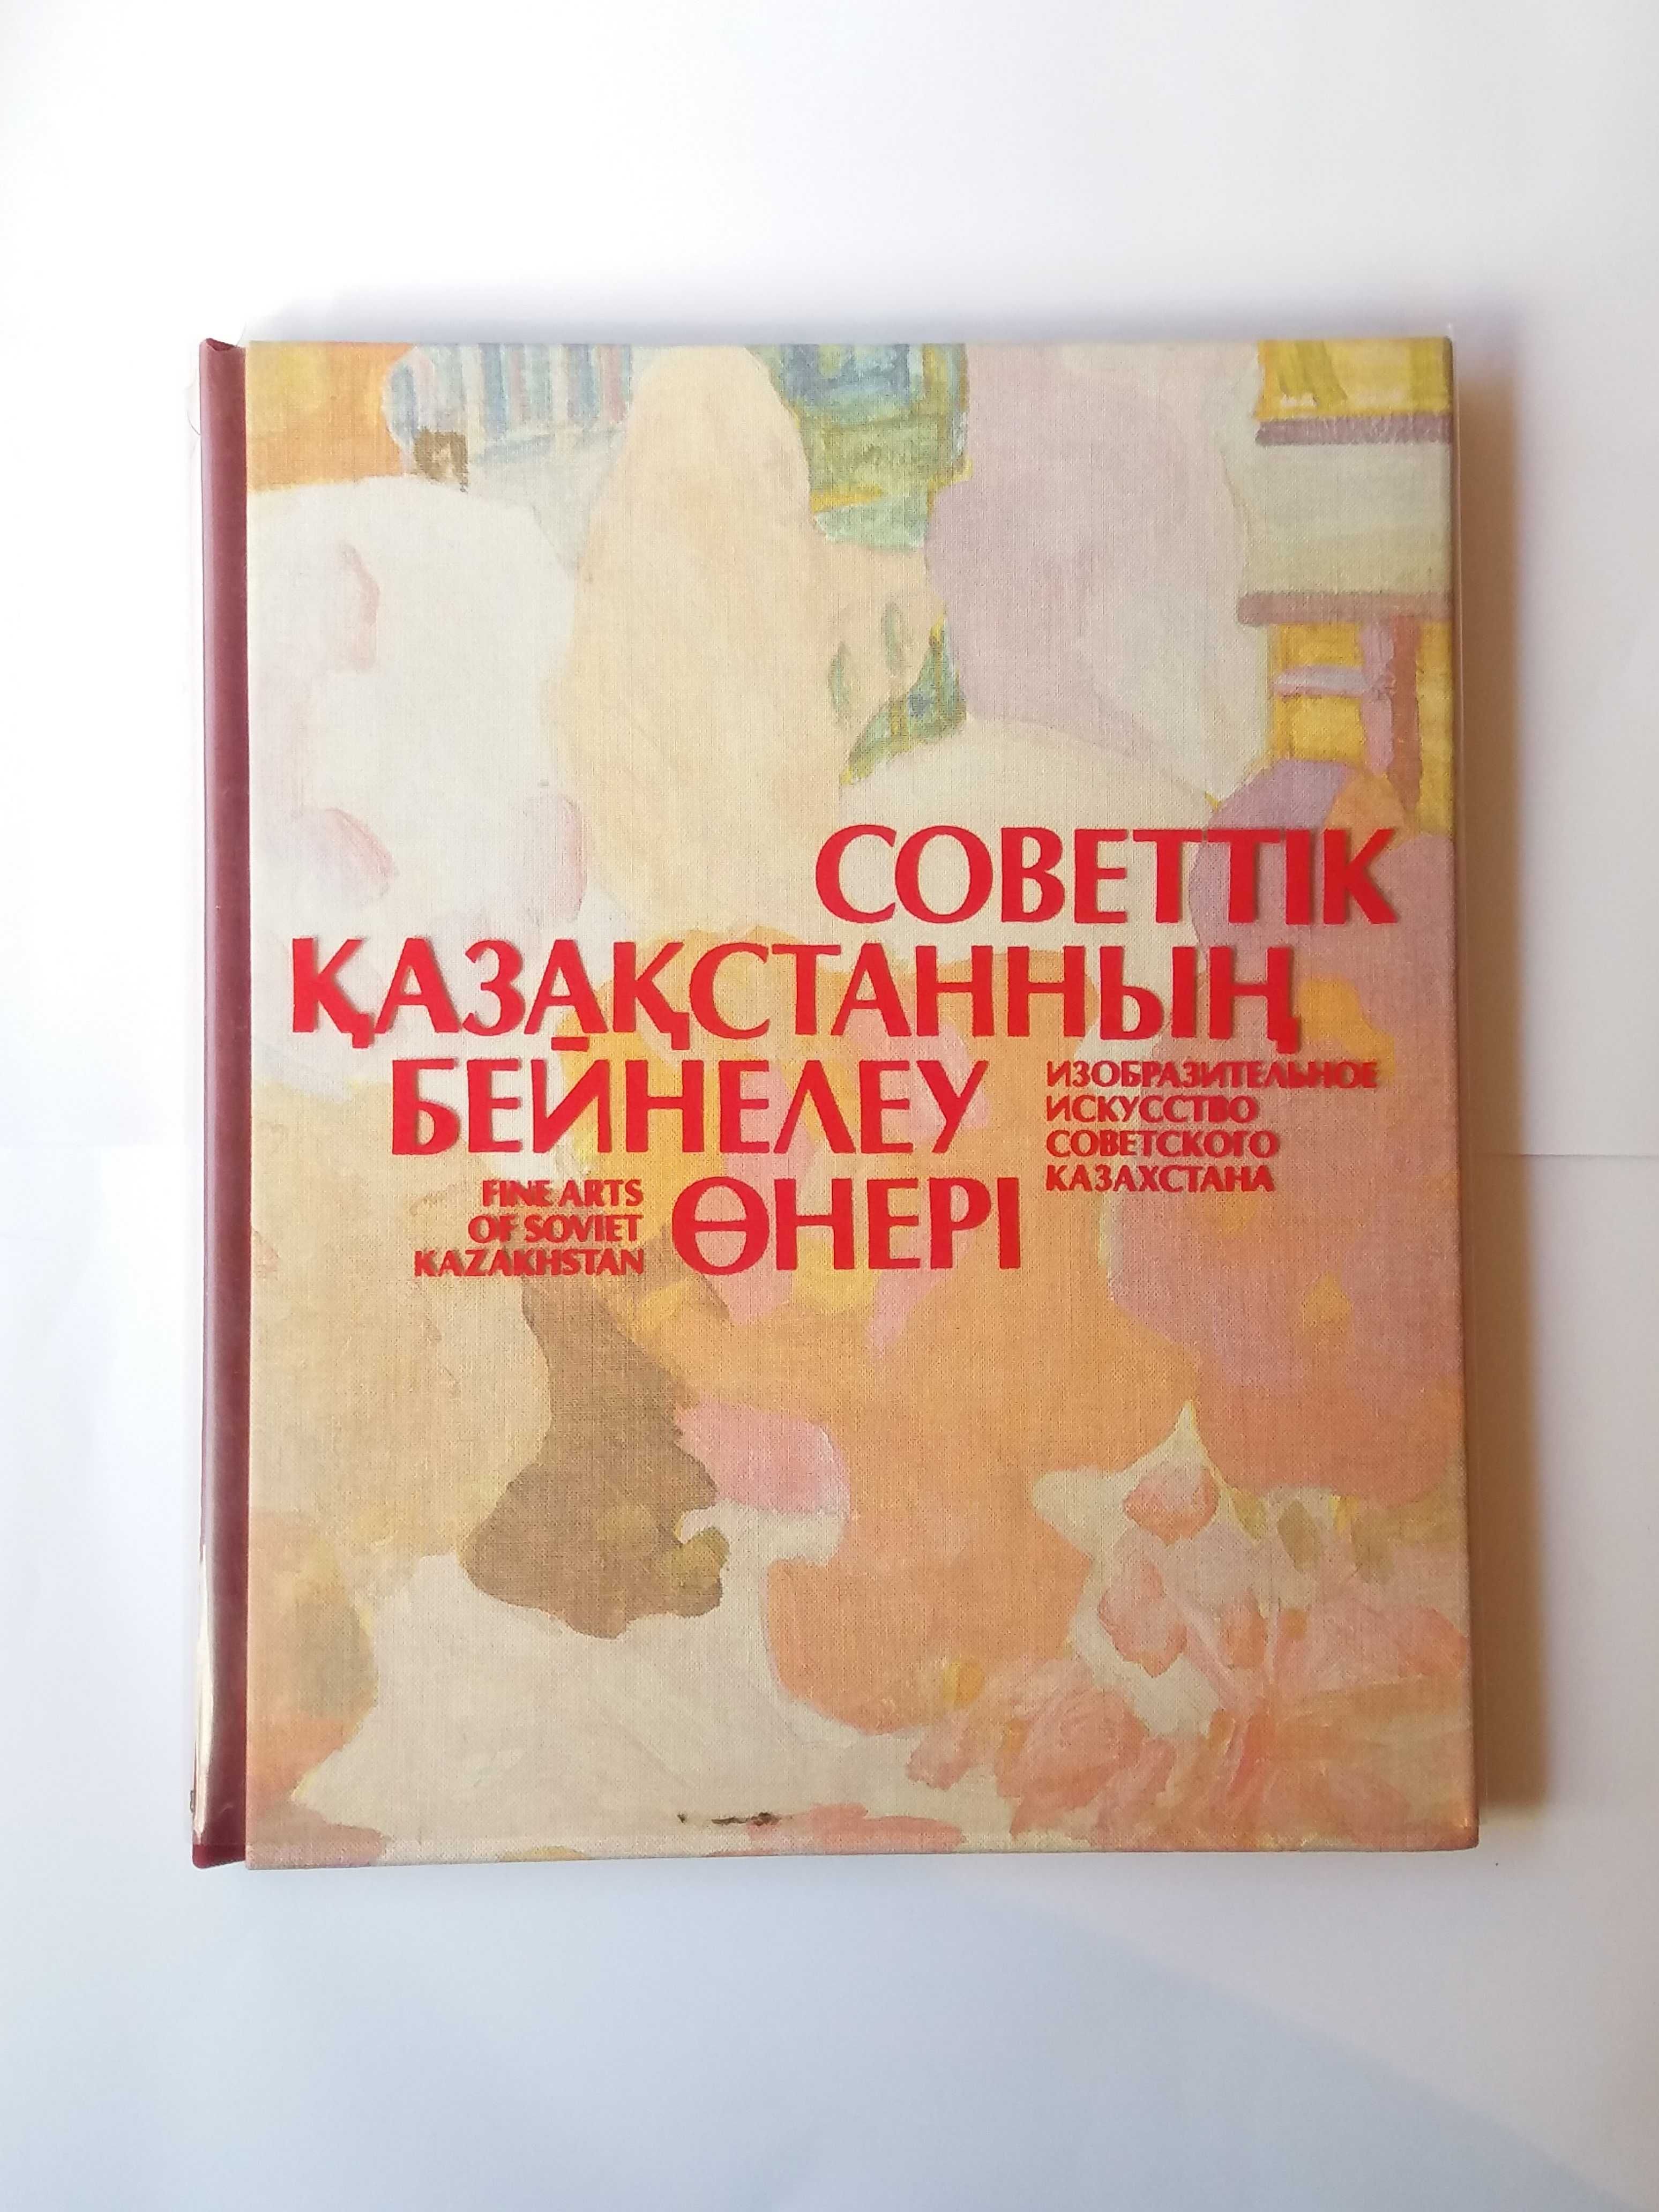 Изобразительное искусство Советского Казахстана (альбом)